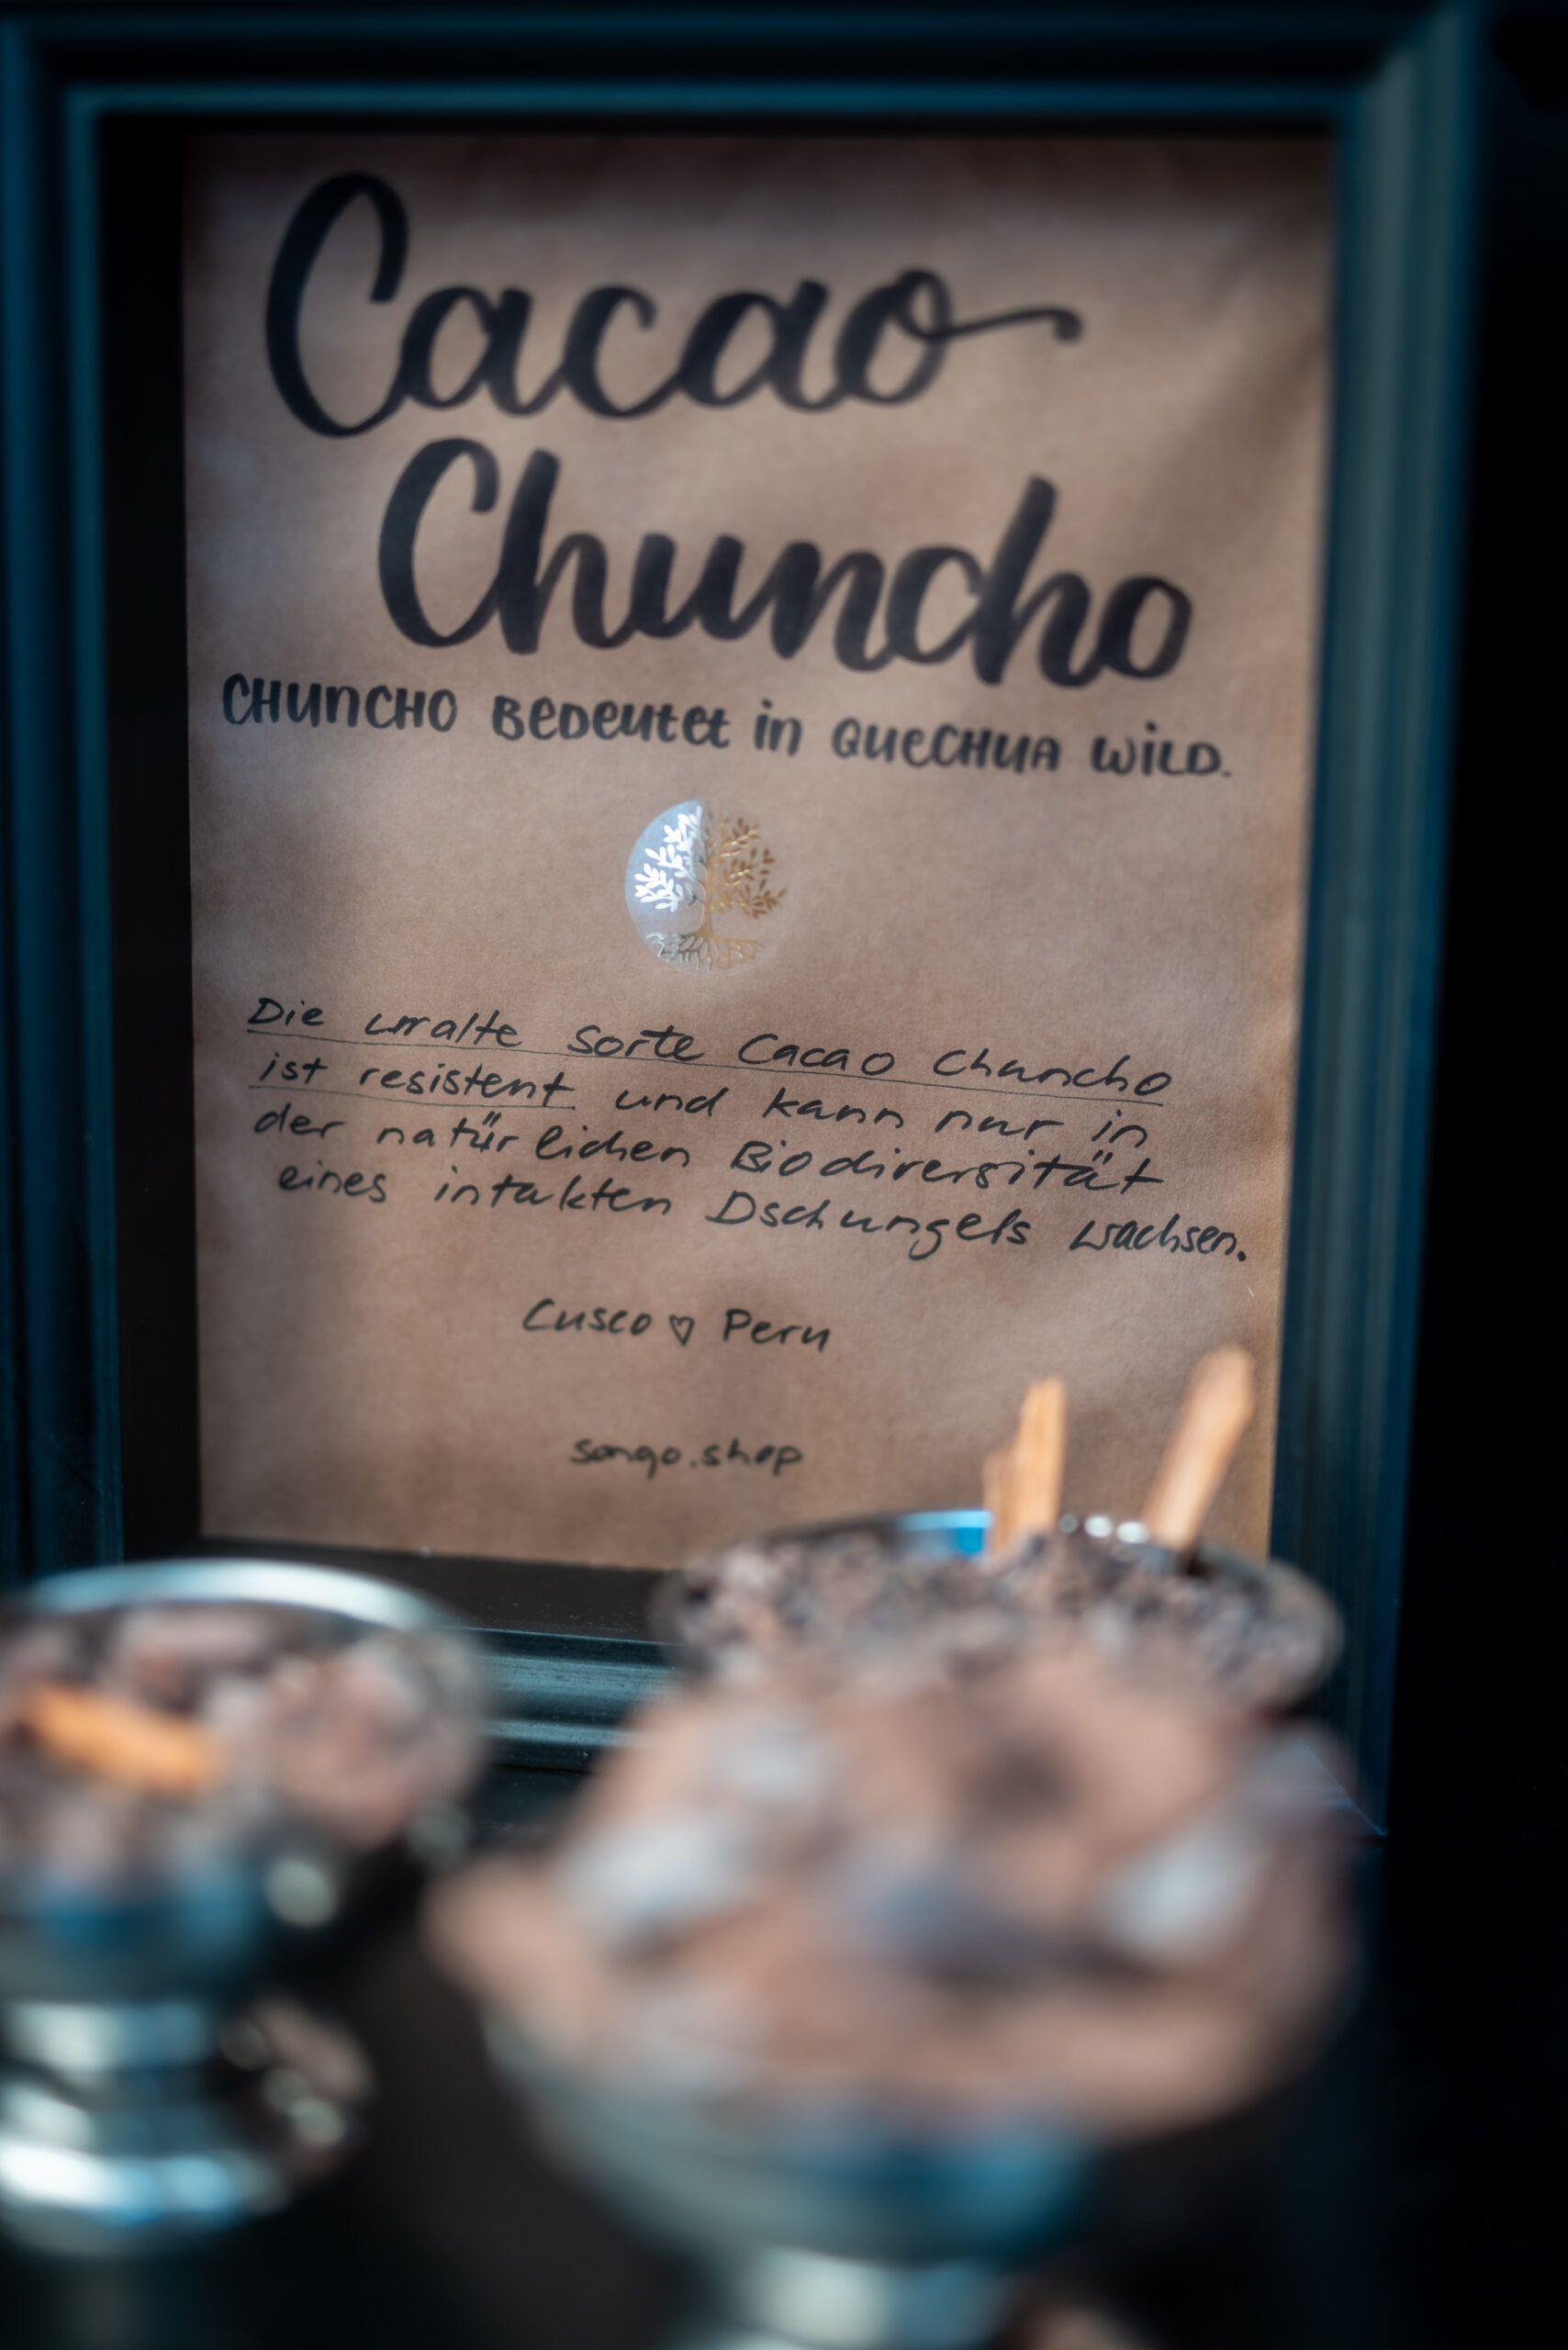 <b>Mittwoch 6. Dezember | 18-22 Uhr</b><br />
Erlebe eine traditionelle Cacao Ceremony mit einem Schamanen aus Cusco Peru: die Munay Cacao Ceremony von SONQO öffnet dein Herz. Die wundervolle Götterspeise löst Angestautes, Unterdrücktes und Ausgedientes. So steht nach der Ceremony viel konstruktive Lebensenergie zur Verfügung. Das Ritual beinhaltet einfache Übungen. Die Munay Meditation (Meditation der bedingungslosen Liebe) führt in ein tiefes Gefühl des inneren Friedens und in den Einklang von Körper, Geist und Seele.Ángel aus Cusco (Peru) leitet die Munay Cacao Cermony. Er wuchs mit der peruanischen Kosmologie, dem Heilwissen der Anden sowie der Pflanzenwelt des Dschungels auf. Aline aus der Schweiz ist mit der Kosmologie und dem vorbuddhistischen Heilwissen aus der Bön-Kultur Tibets vertraut. Gemeinsam verbinden sie Menschen mit diesen ursprünglichen Weisheiten der Naturverbundenheit, um sie im modernen Leben wirksam zu machen. Ángel spricht ein einfaches Englisch. Bei Bedarf wird simultan übersetzt.<br />
<b>Tickets</b>: https://www.sonqo.org/ceremonies/